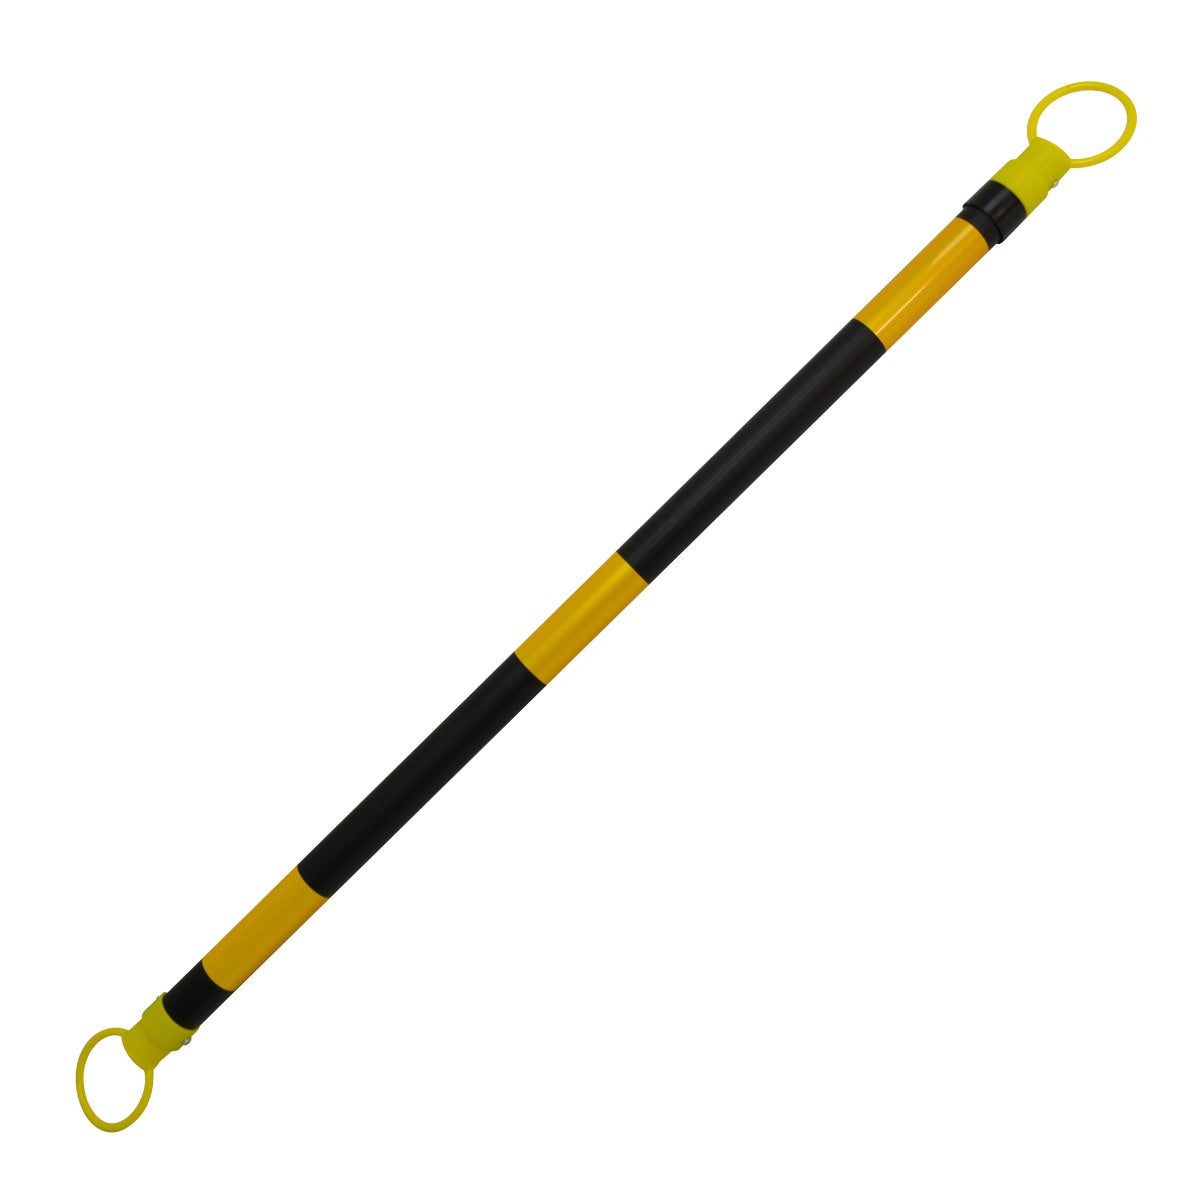 Maxisafe Retractable ABS Cone Bar - Yellow/Black BCB739